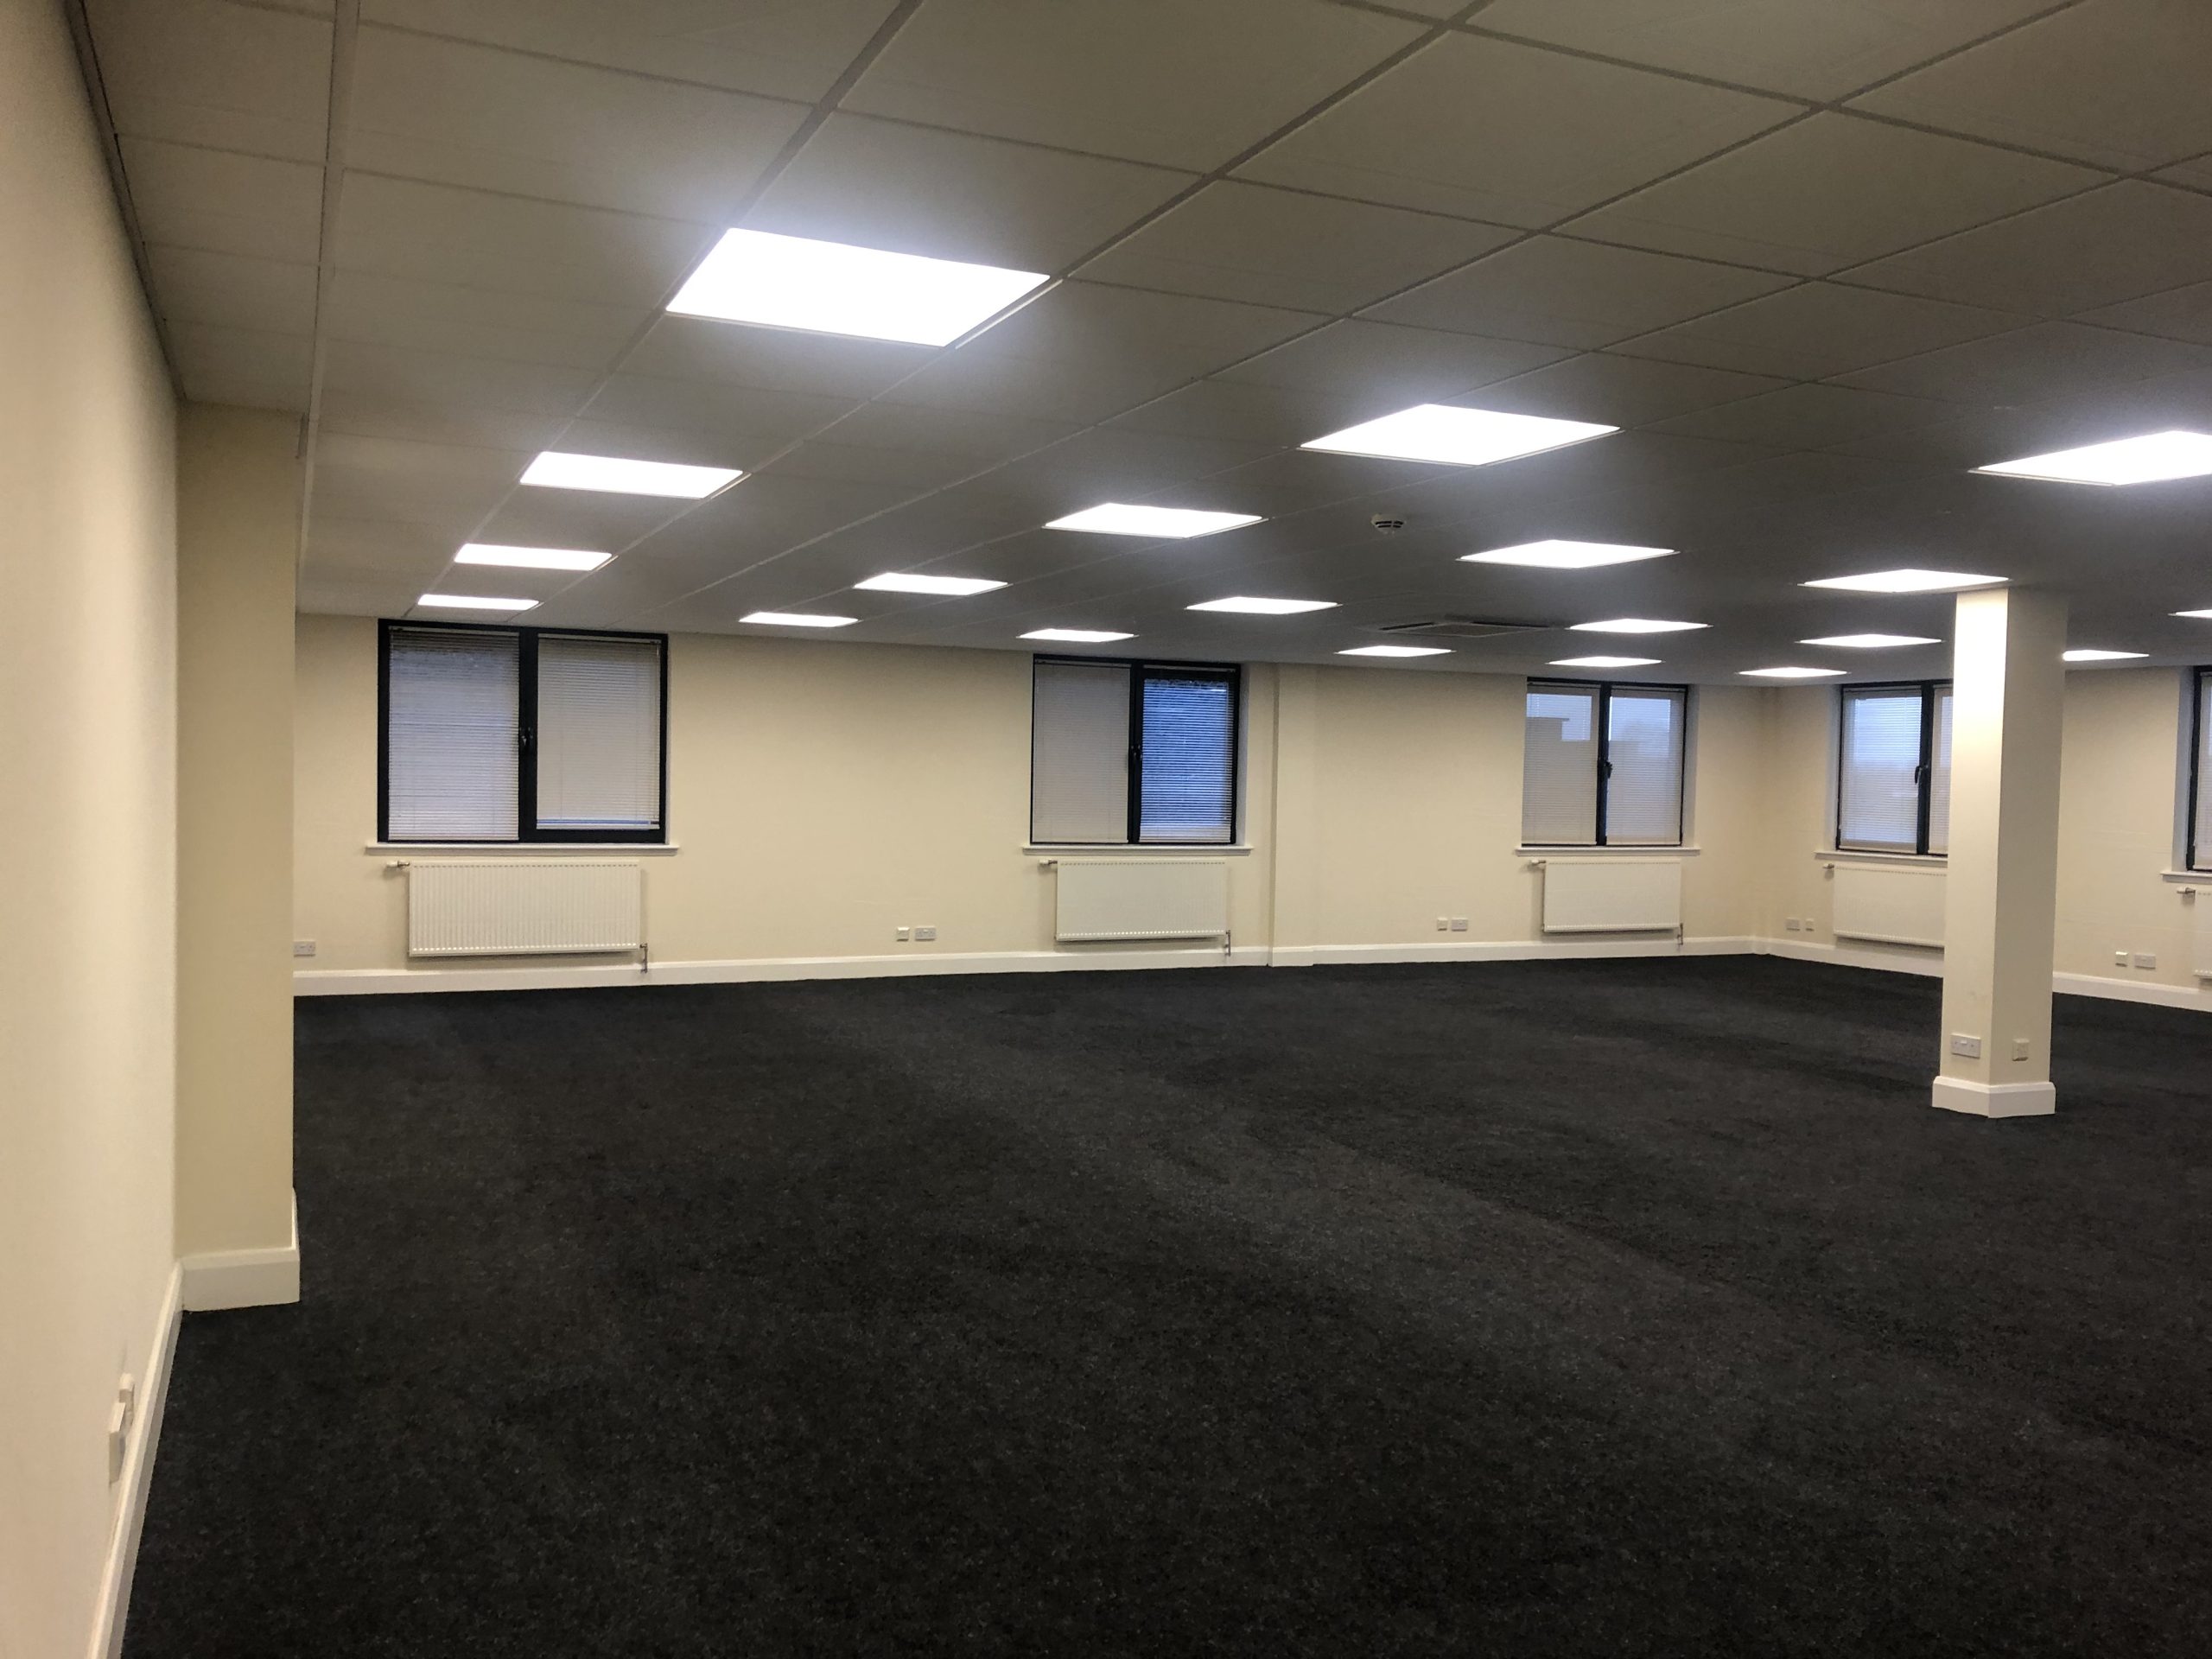 Castlecroft King James 1,600 sqft Office Suite